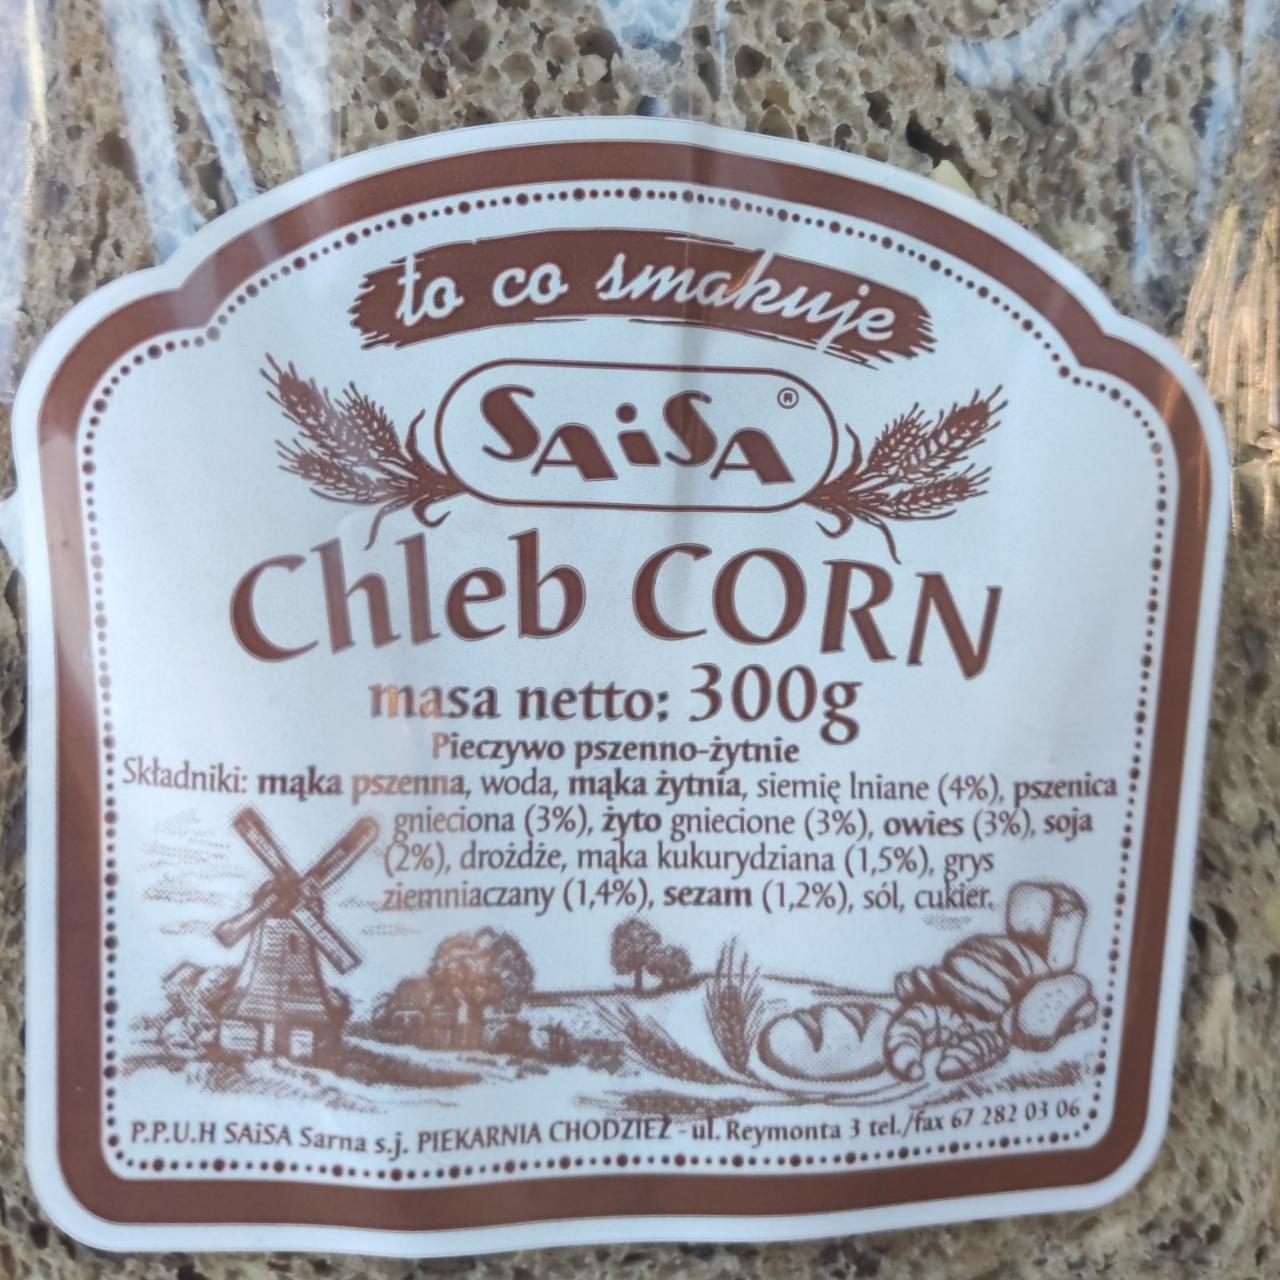 Zdjęcia - chleb corn pieczywo pszenno - żytnie saisa